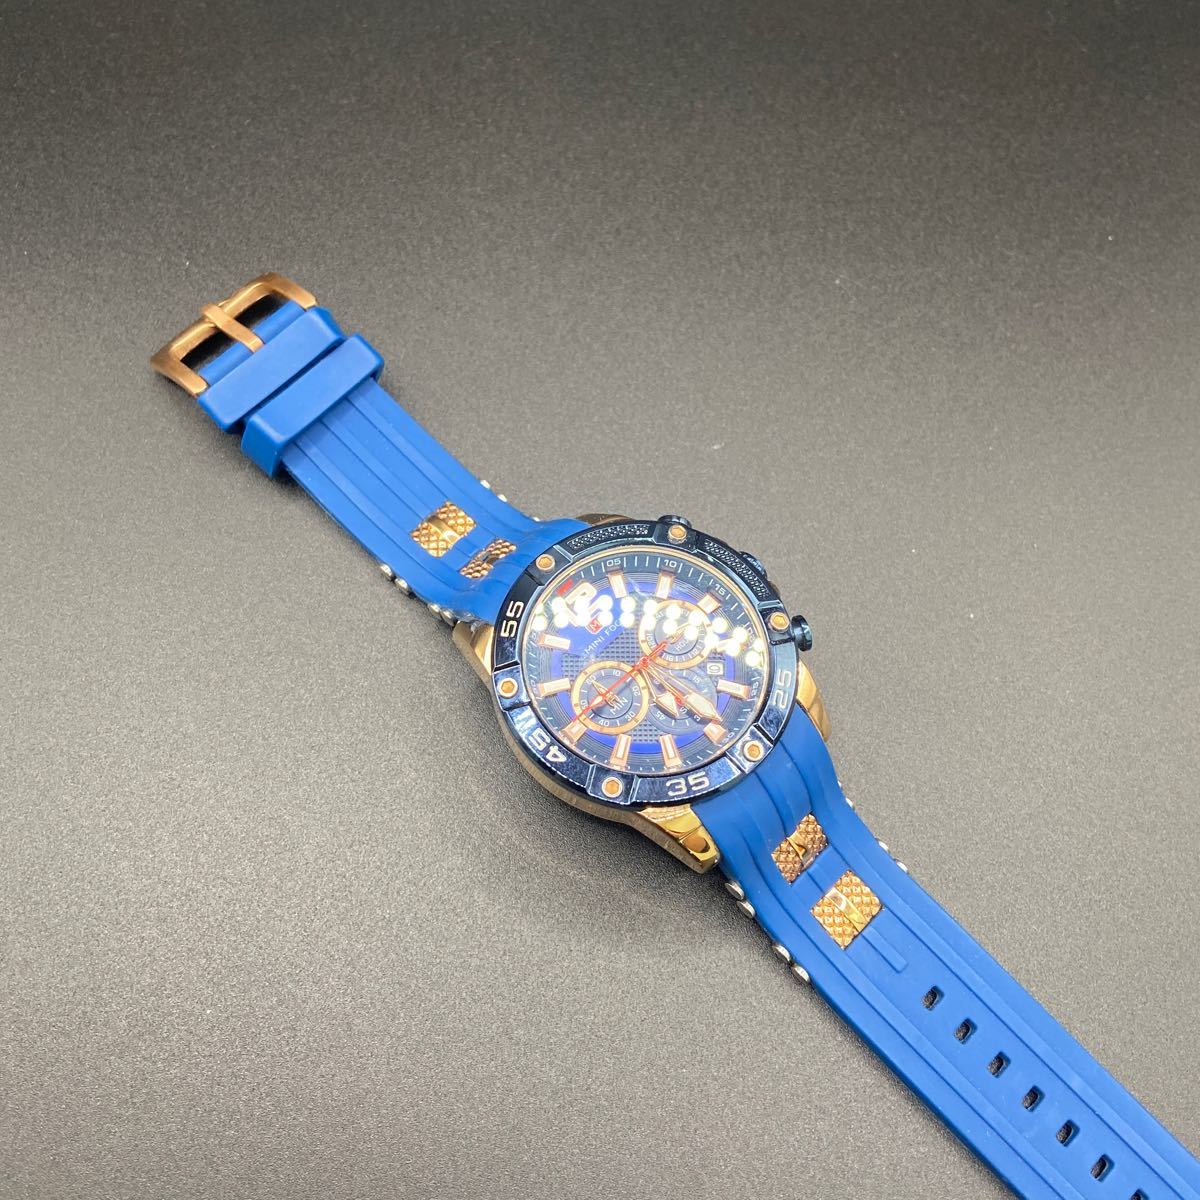 11 腕時計 MINIFOCUS MF0349G スポーツ クロノグラフ 防水 クォーツ式 シリコンバンド ブルー/ゴールド_画像4